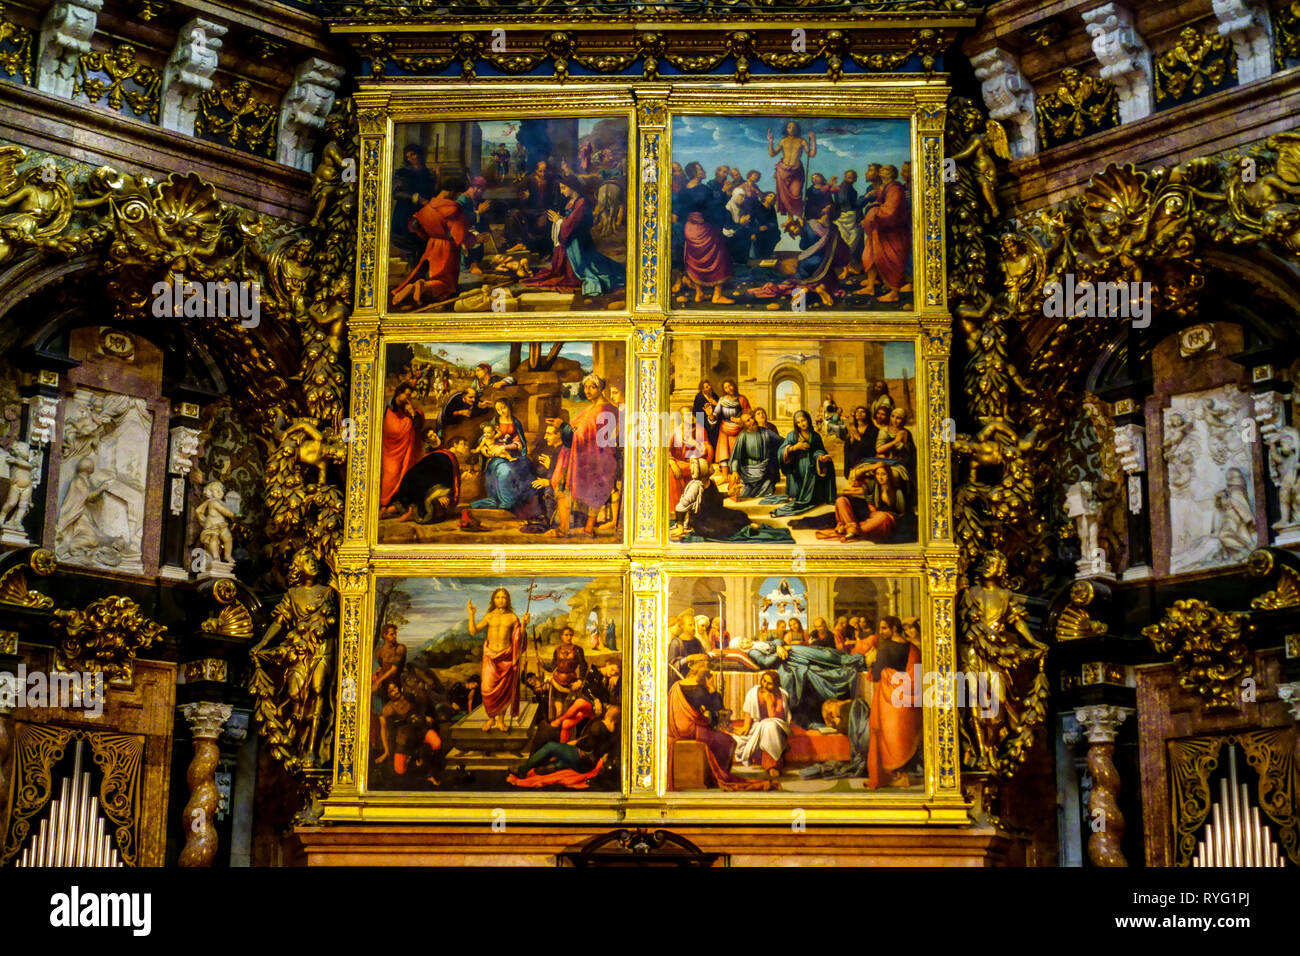 Altargemälde der Kathedrale von Valencia Spanien Inneres Hauptaltar Mittelalter gotische Kunst Stockfoto